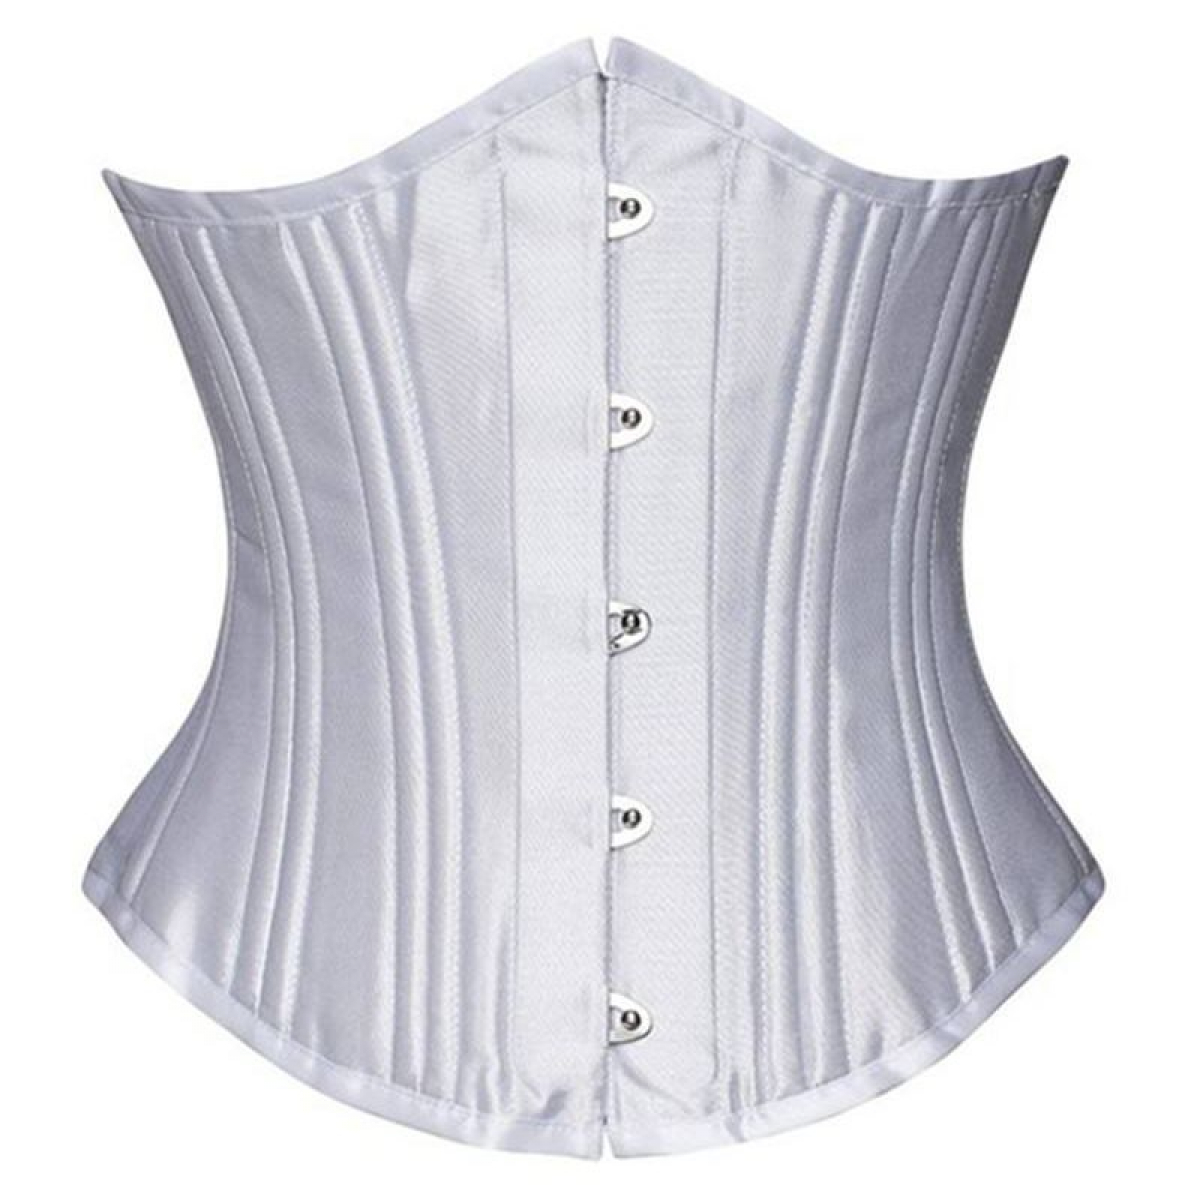 Hick Aanpassen Persoon belast met sportgame Wit waisttrain corset met 24 stalen baleinen | Ladywear Exclusieve Lingerie